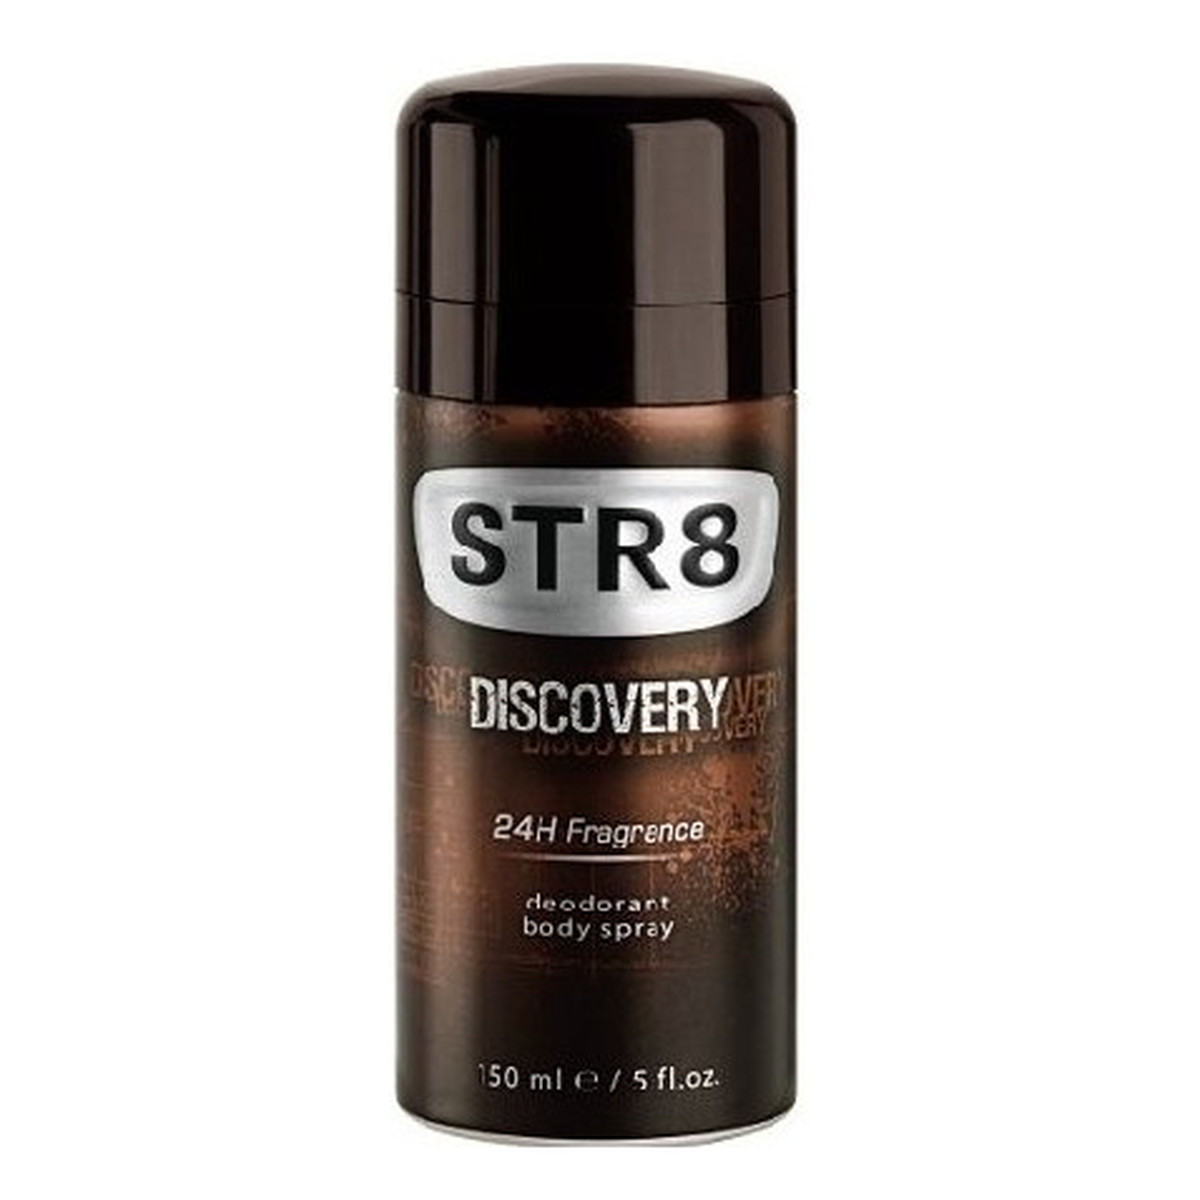 STR8 Discovery Dezodorant Spray 150ml